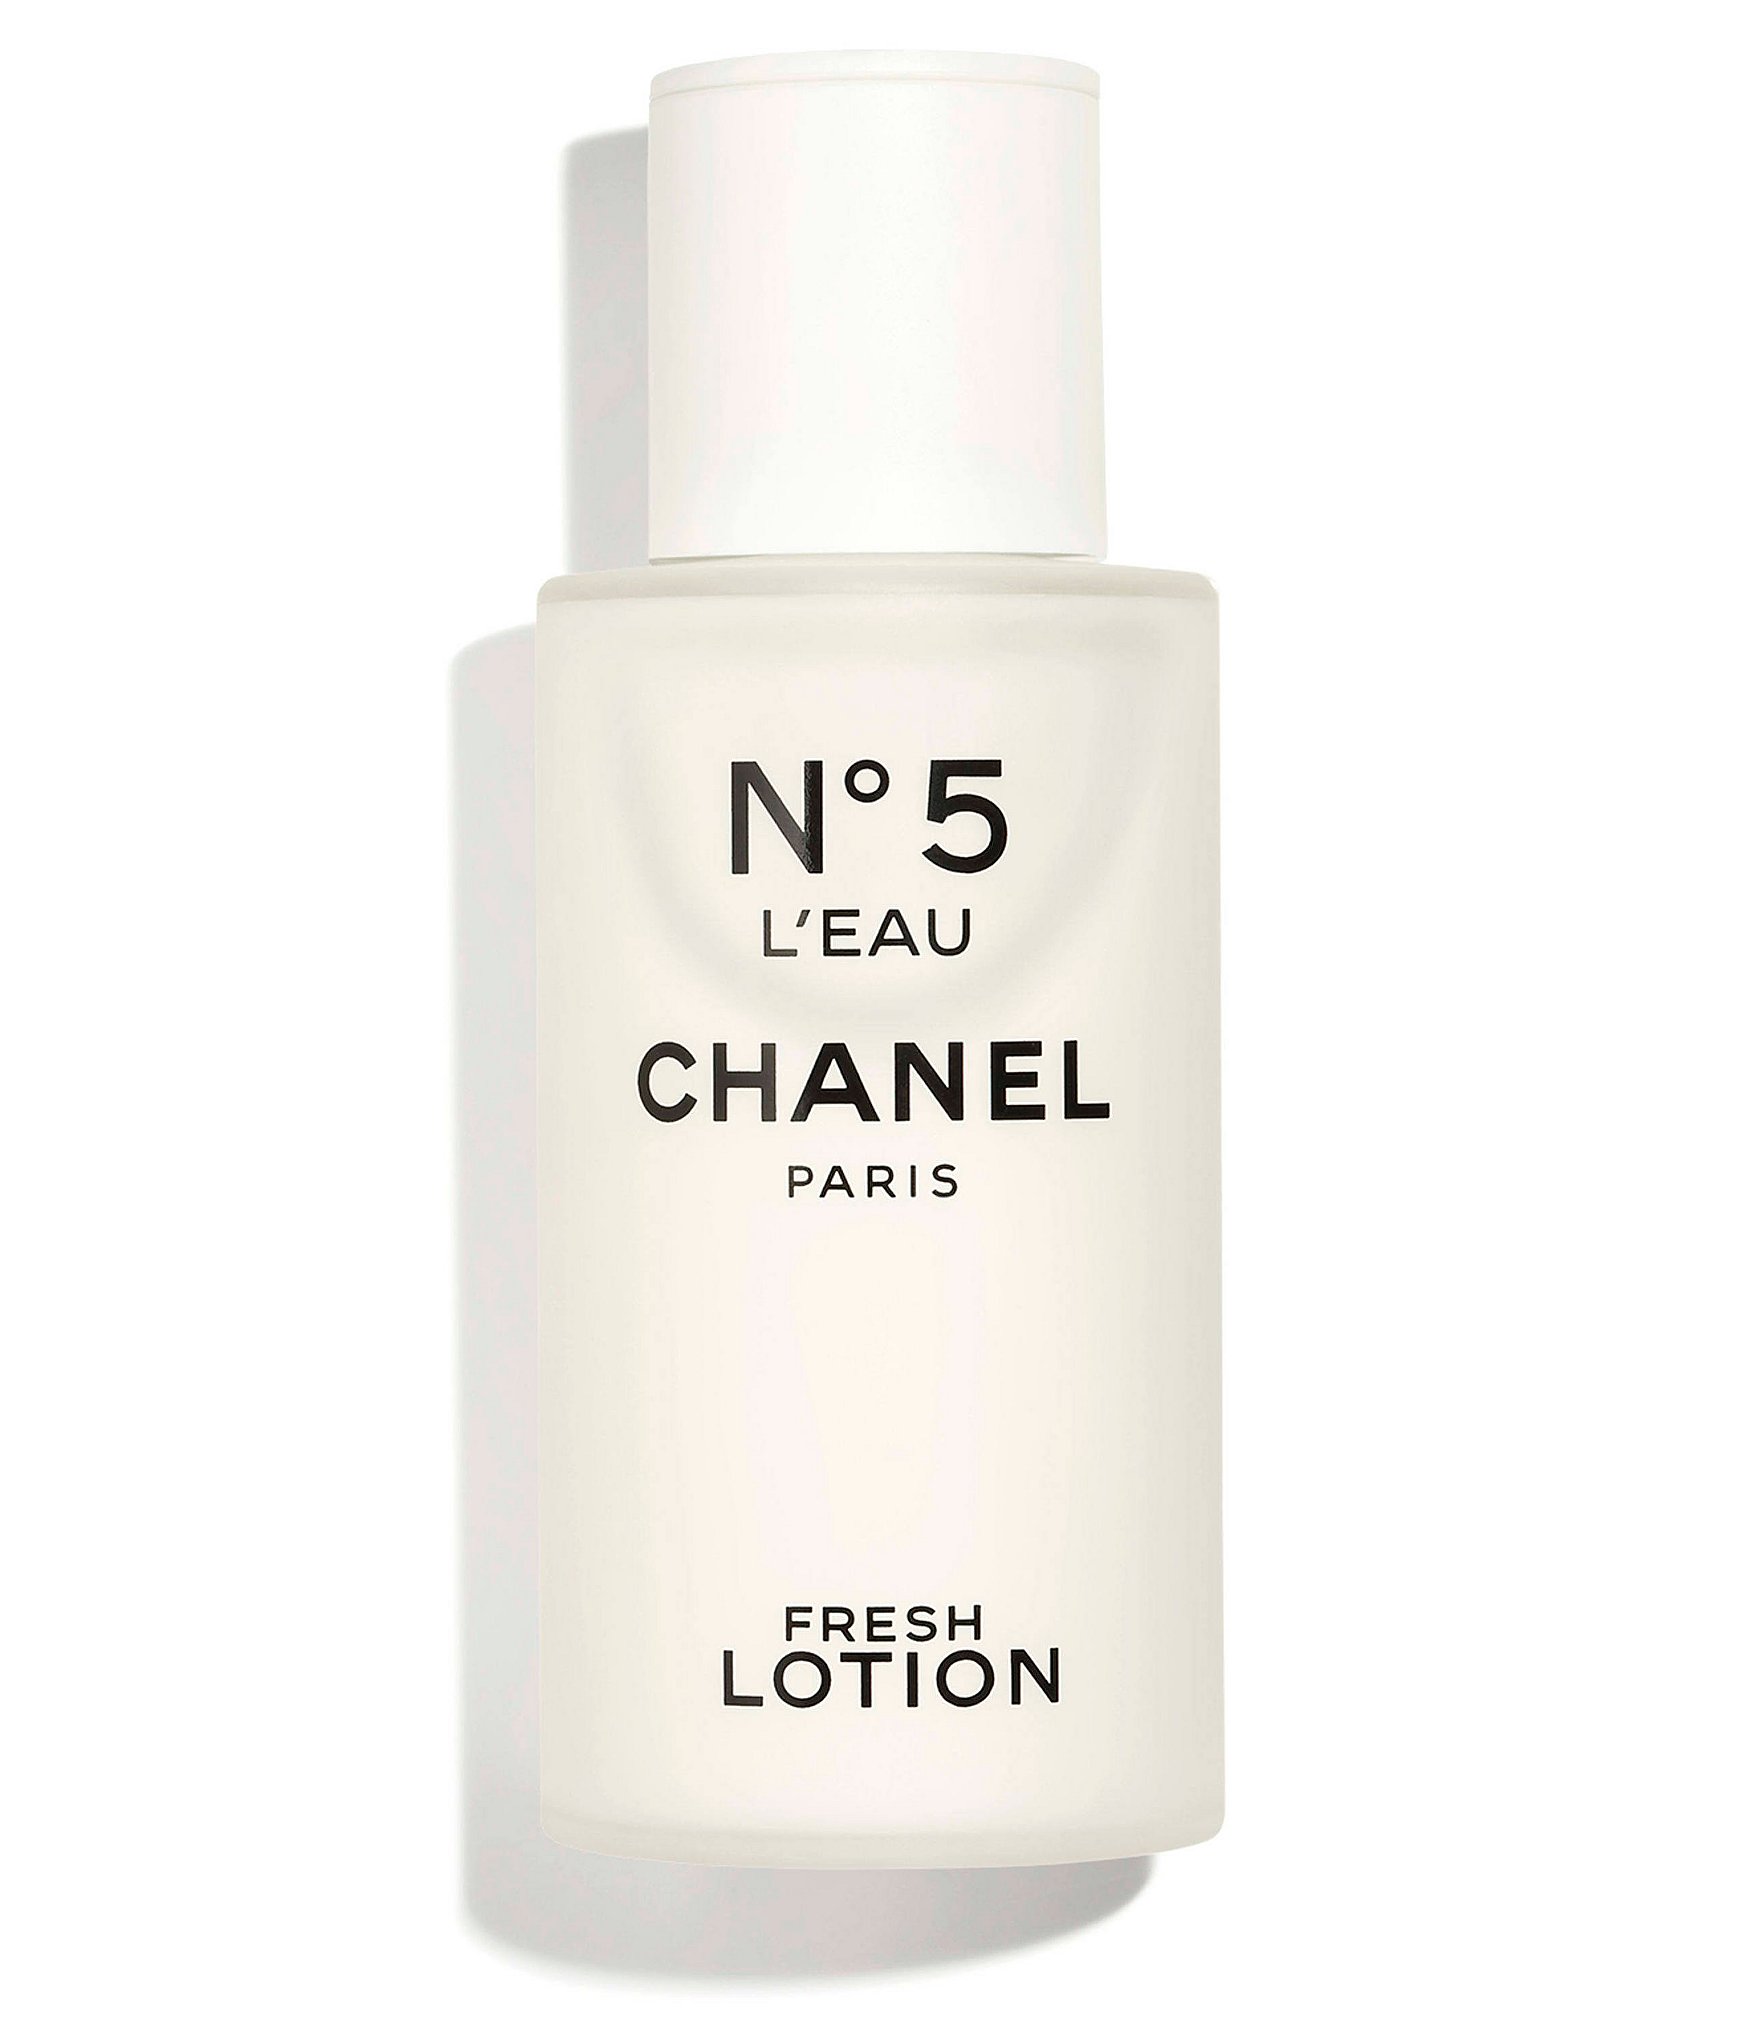 Chanel N°5 L'eau Fresh Lotion